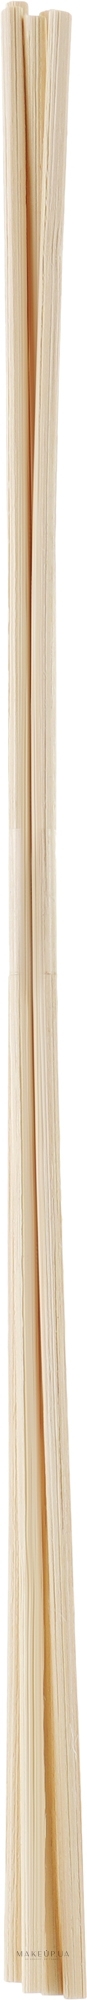 Ротанговые палочки для аромадиффузора, 25 см, молочные - Veronni — фото 5шт